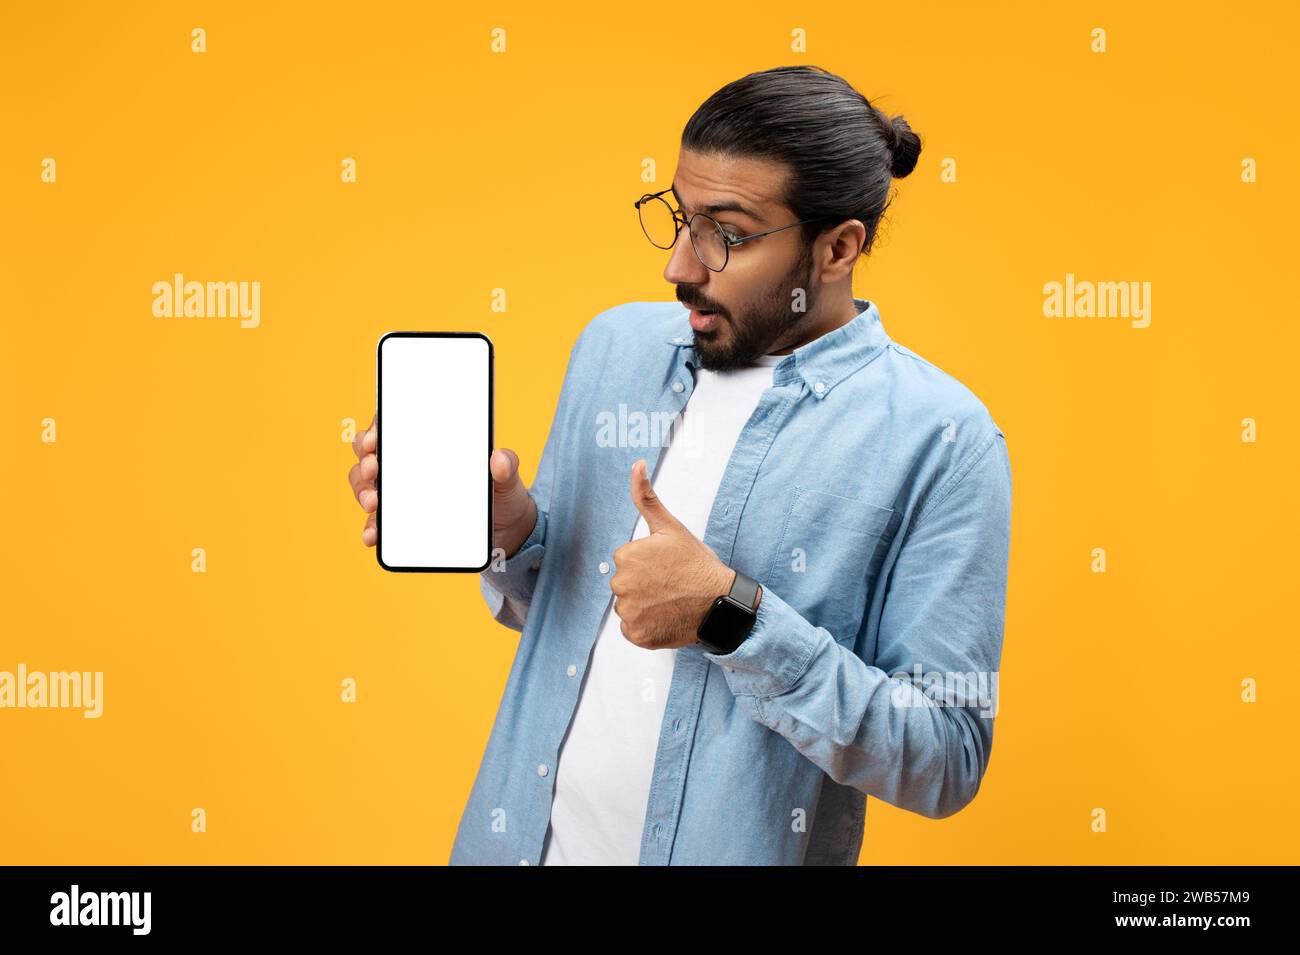 Un uomo sorpreso con una camicia in denim azzurro regge uno smartphone con uno schermo vuoto Foto Stock